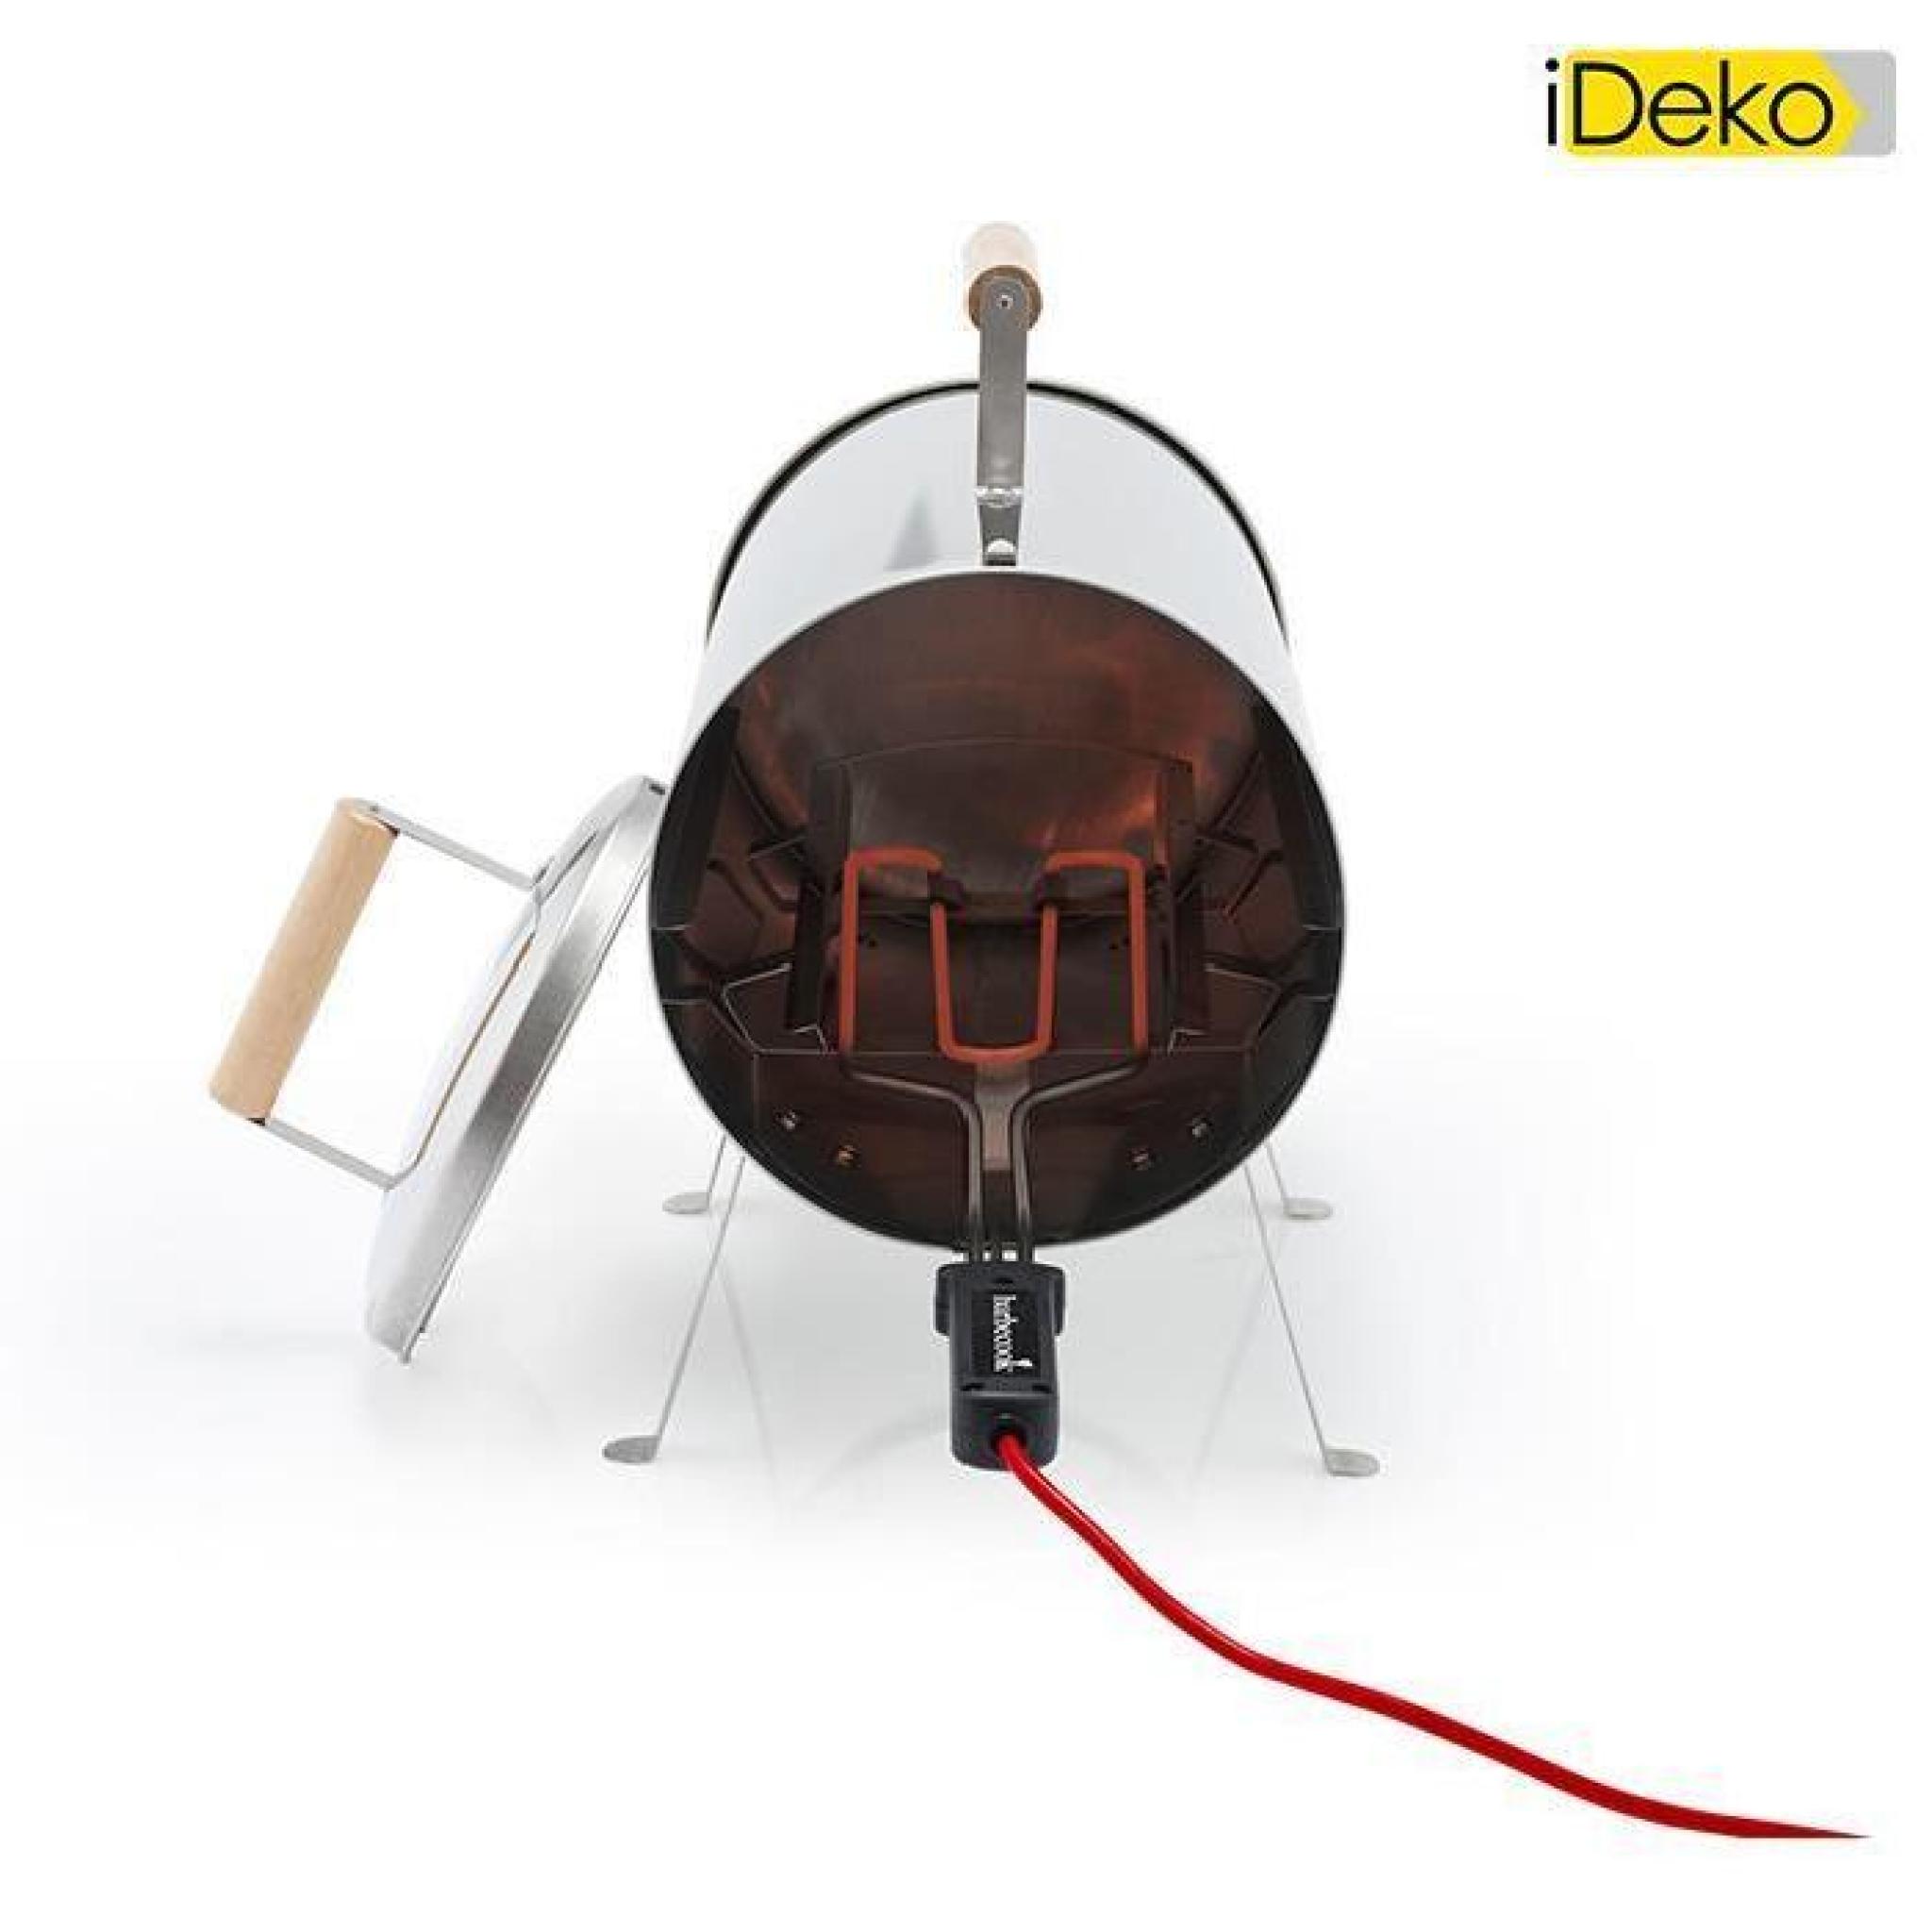 iDeko®Barbecue Fumoir électrique en inox, 1100W/250V 4 personnes 64x26x36cm pas cher